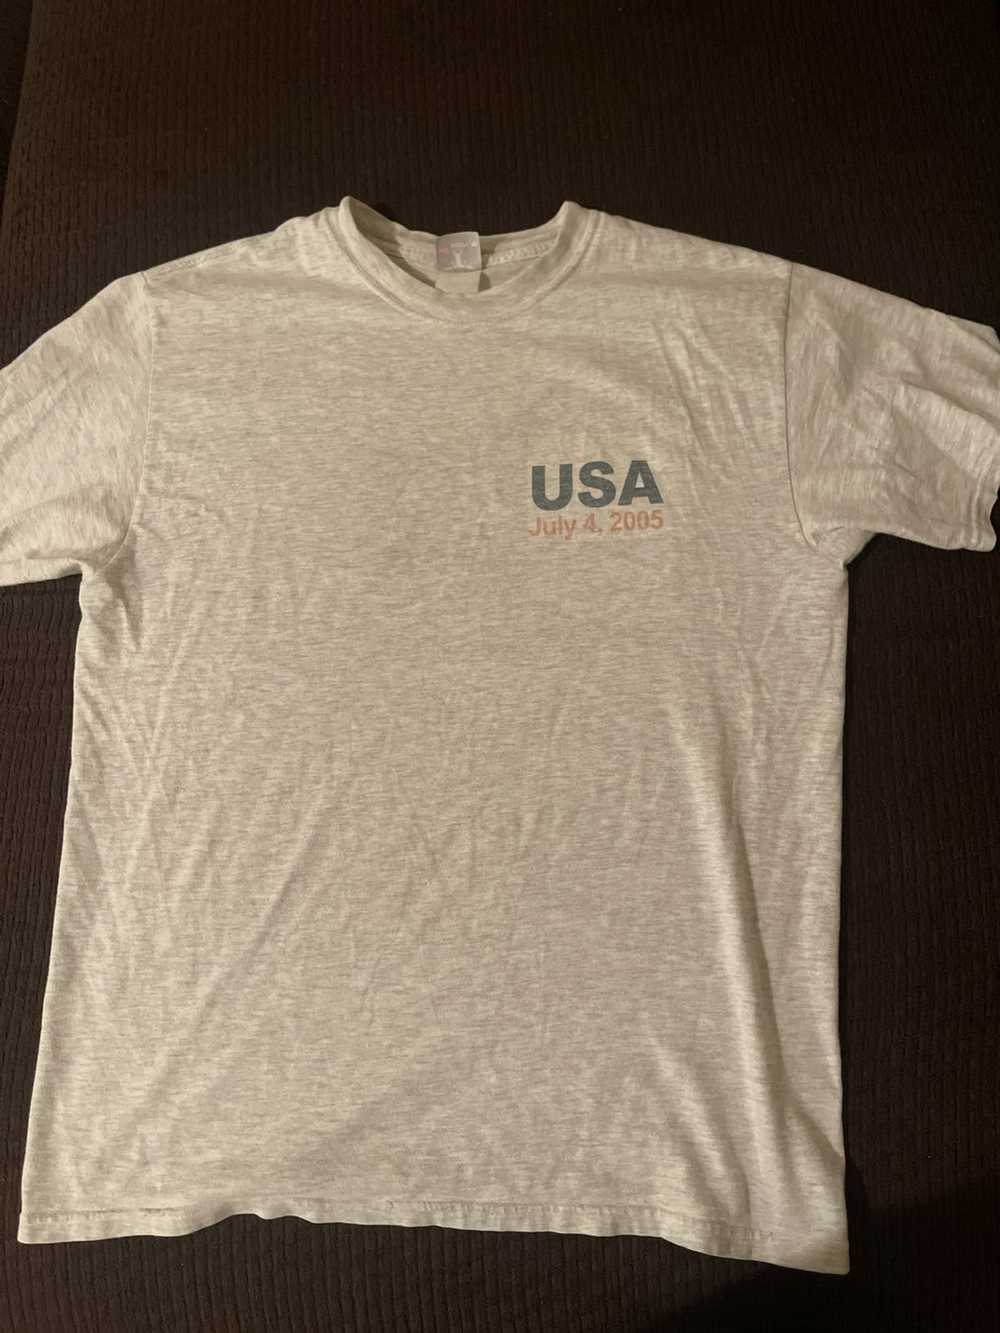 Vintage vintage USA T shirt - image 1